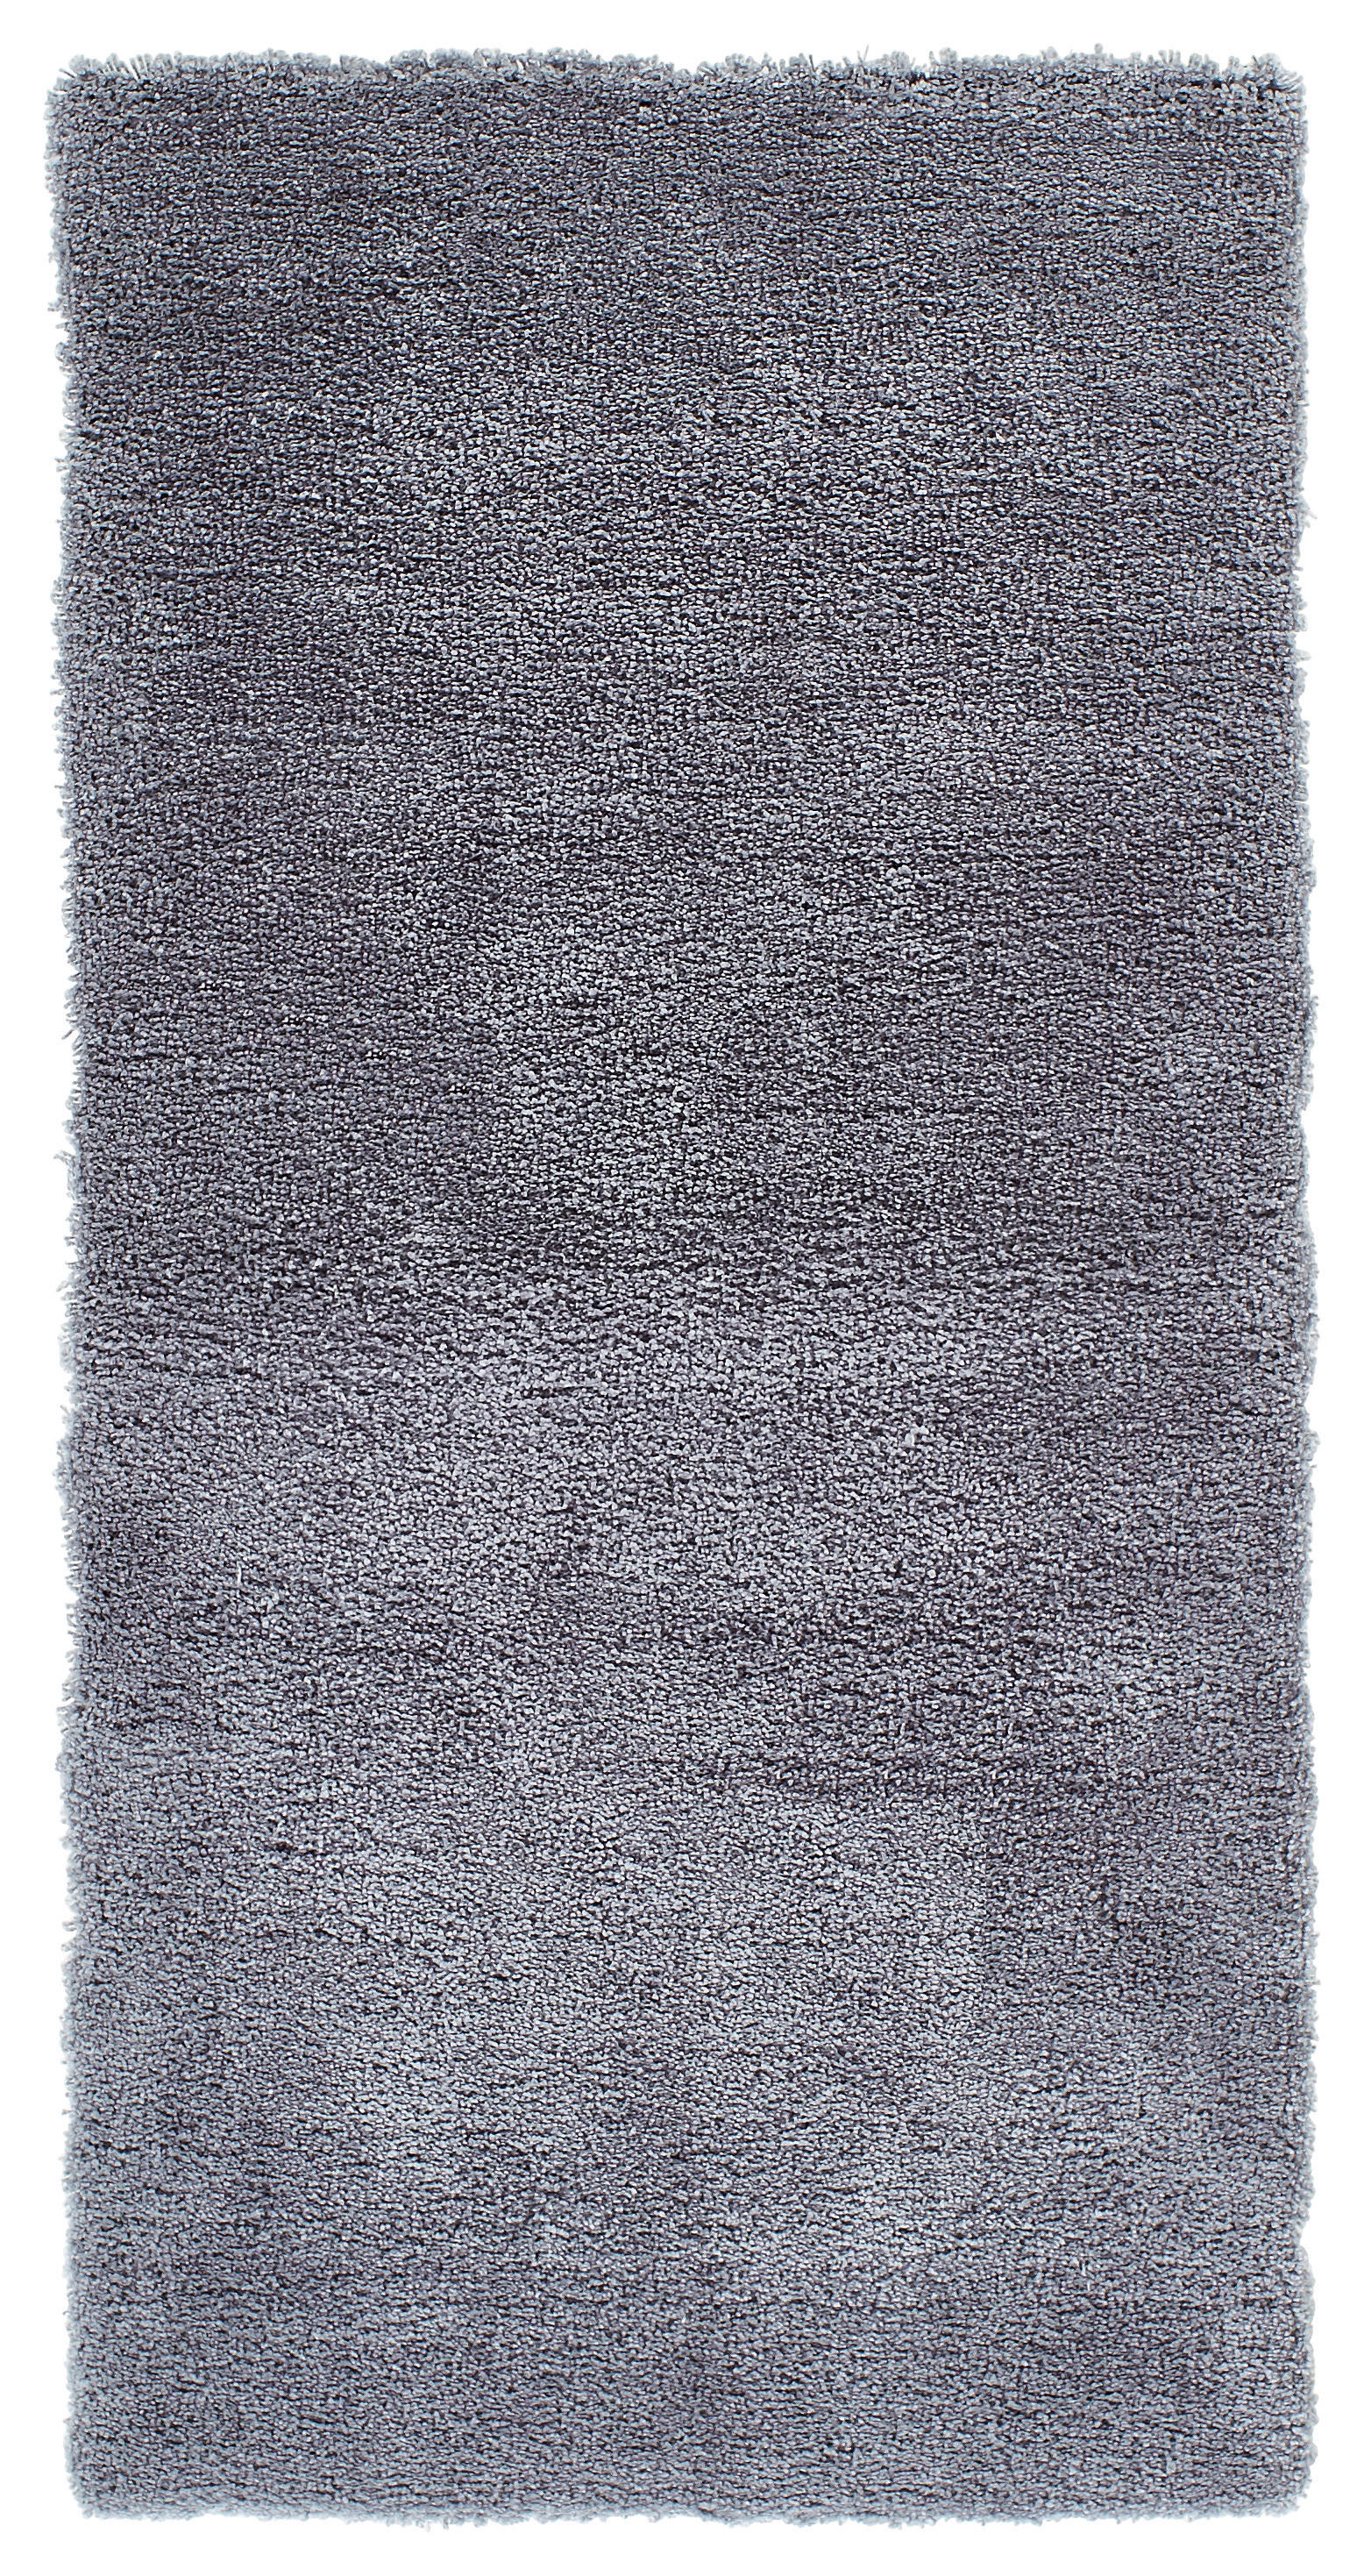 HOCHFLORTEPPICH 70/140 cm Relaxx  - Grau, KONVENTIONELL, Textil (70/140cm) - Esprit